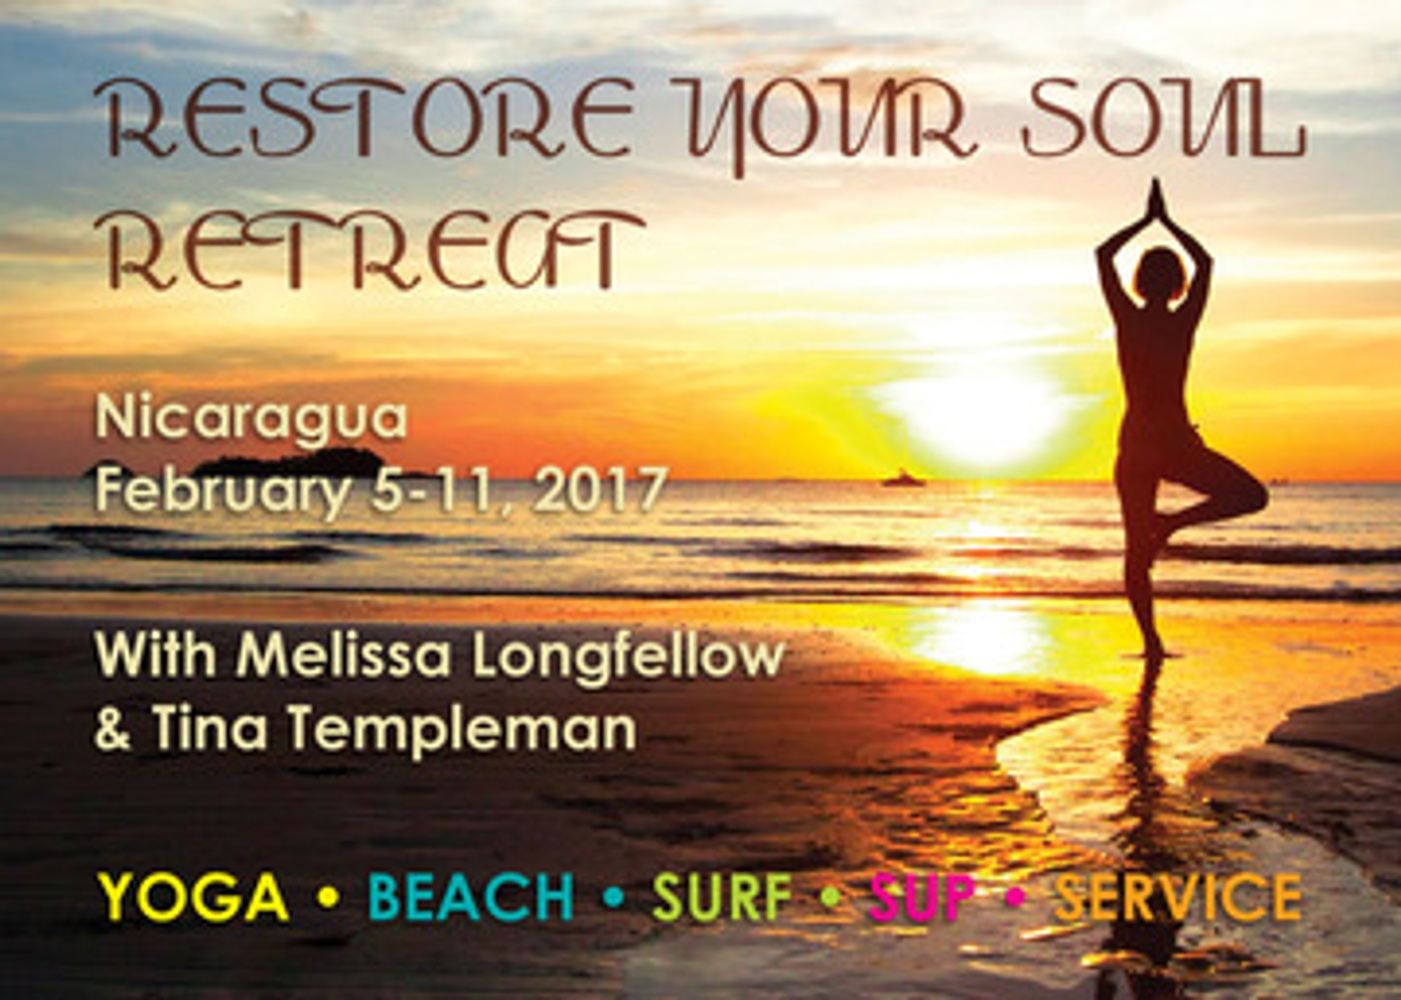 2017 Yoga Retreat in Nicaragua - Restore Your Soul!